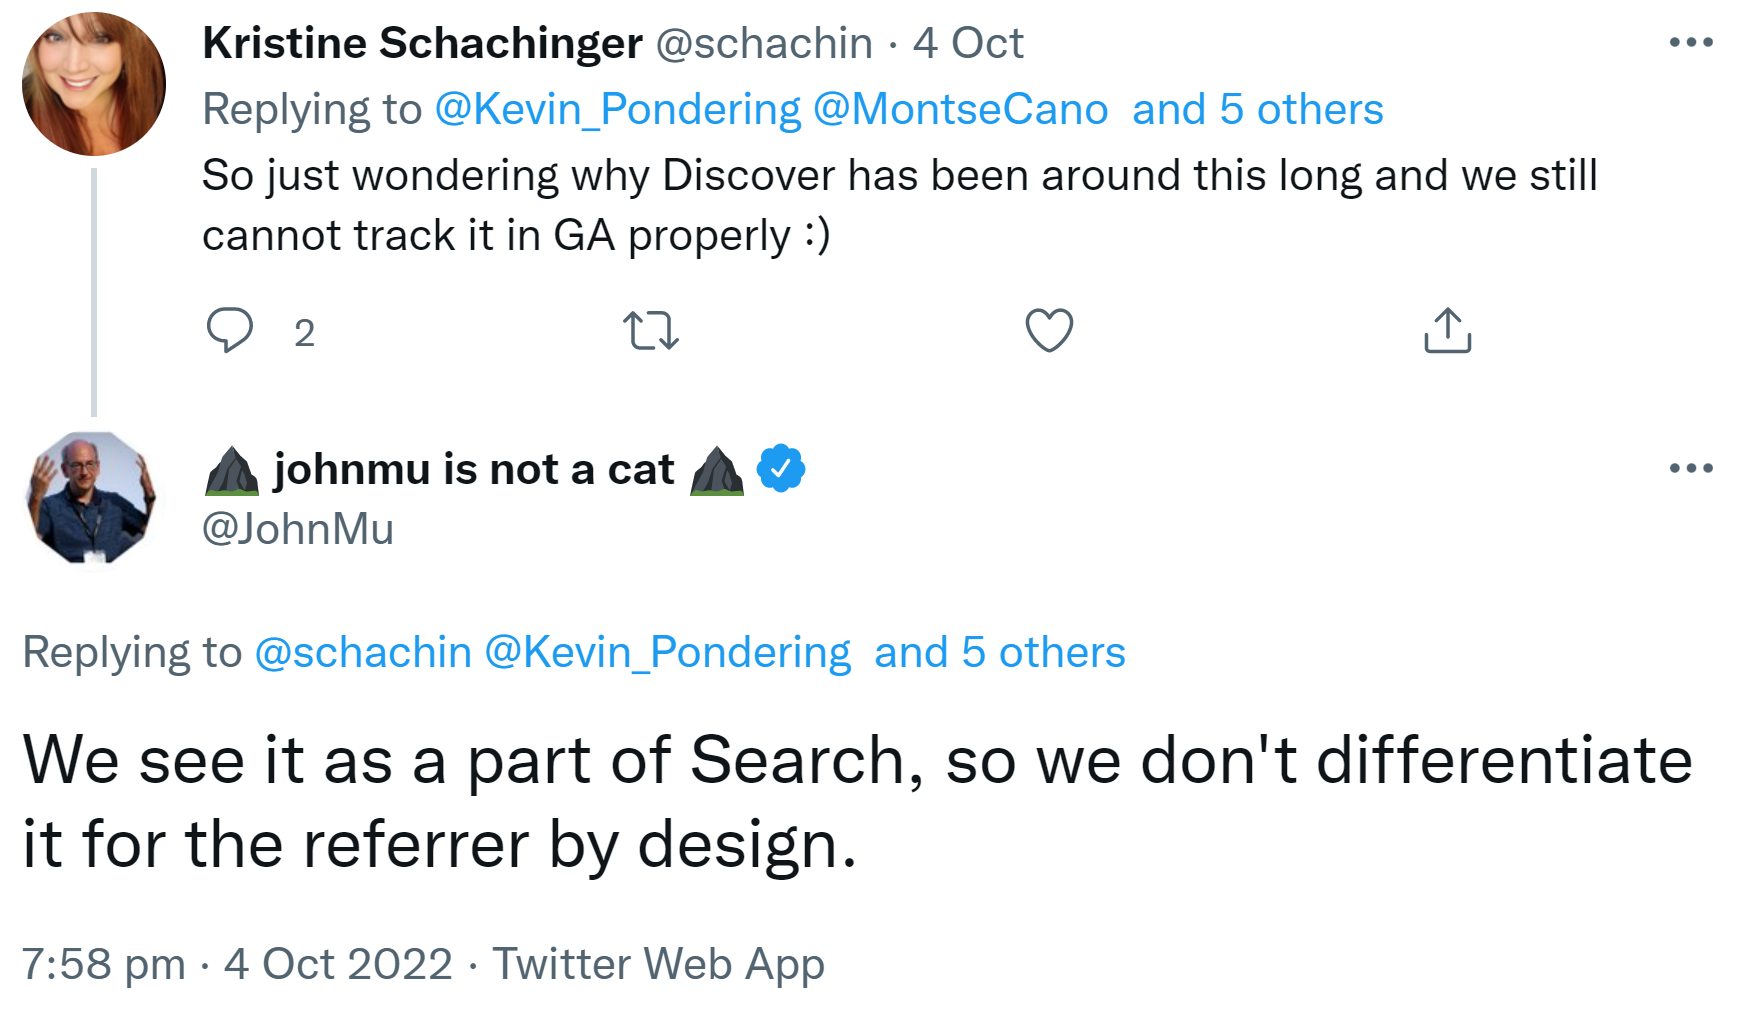 Google sieht Discover als Teil der Suche, daher kein separater Referrer